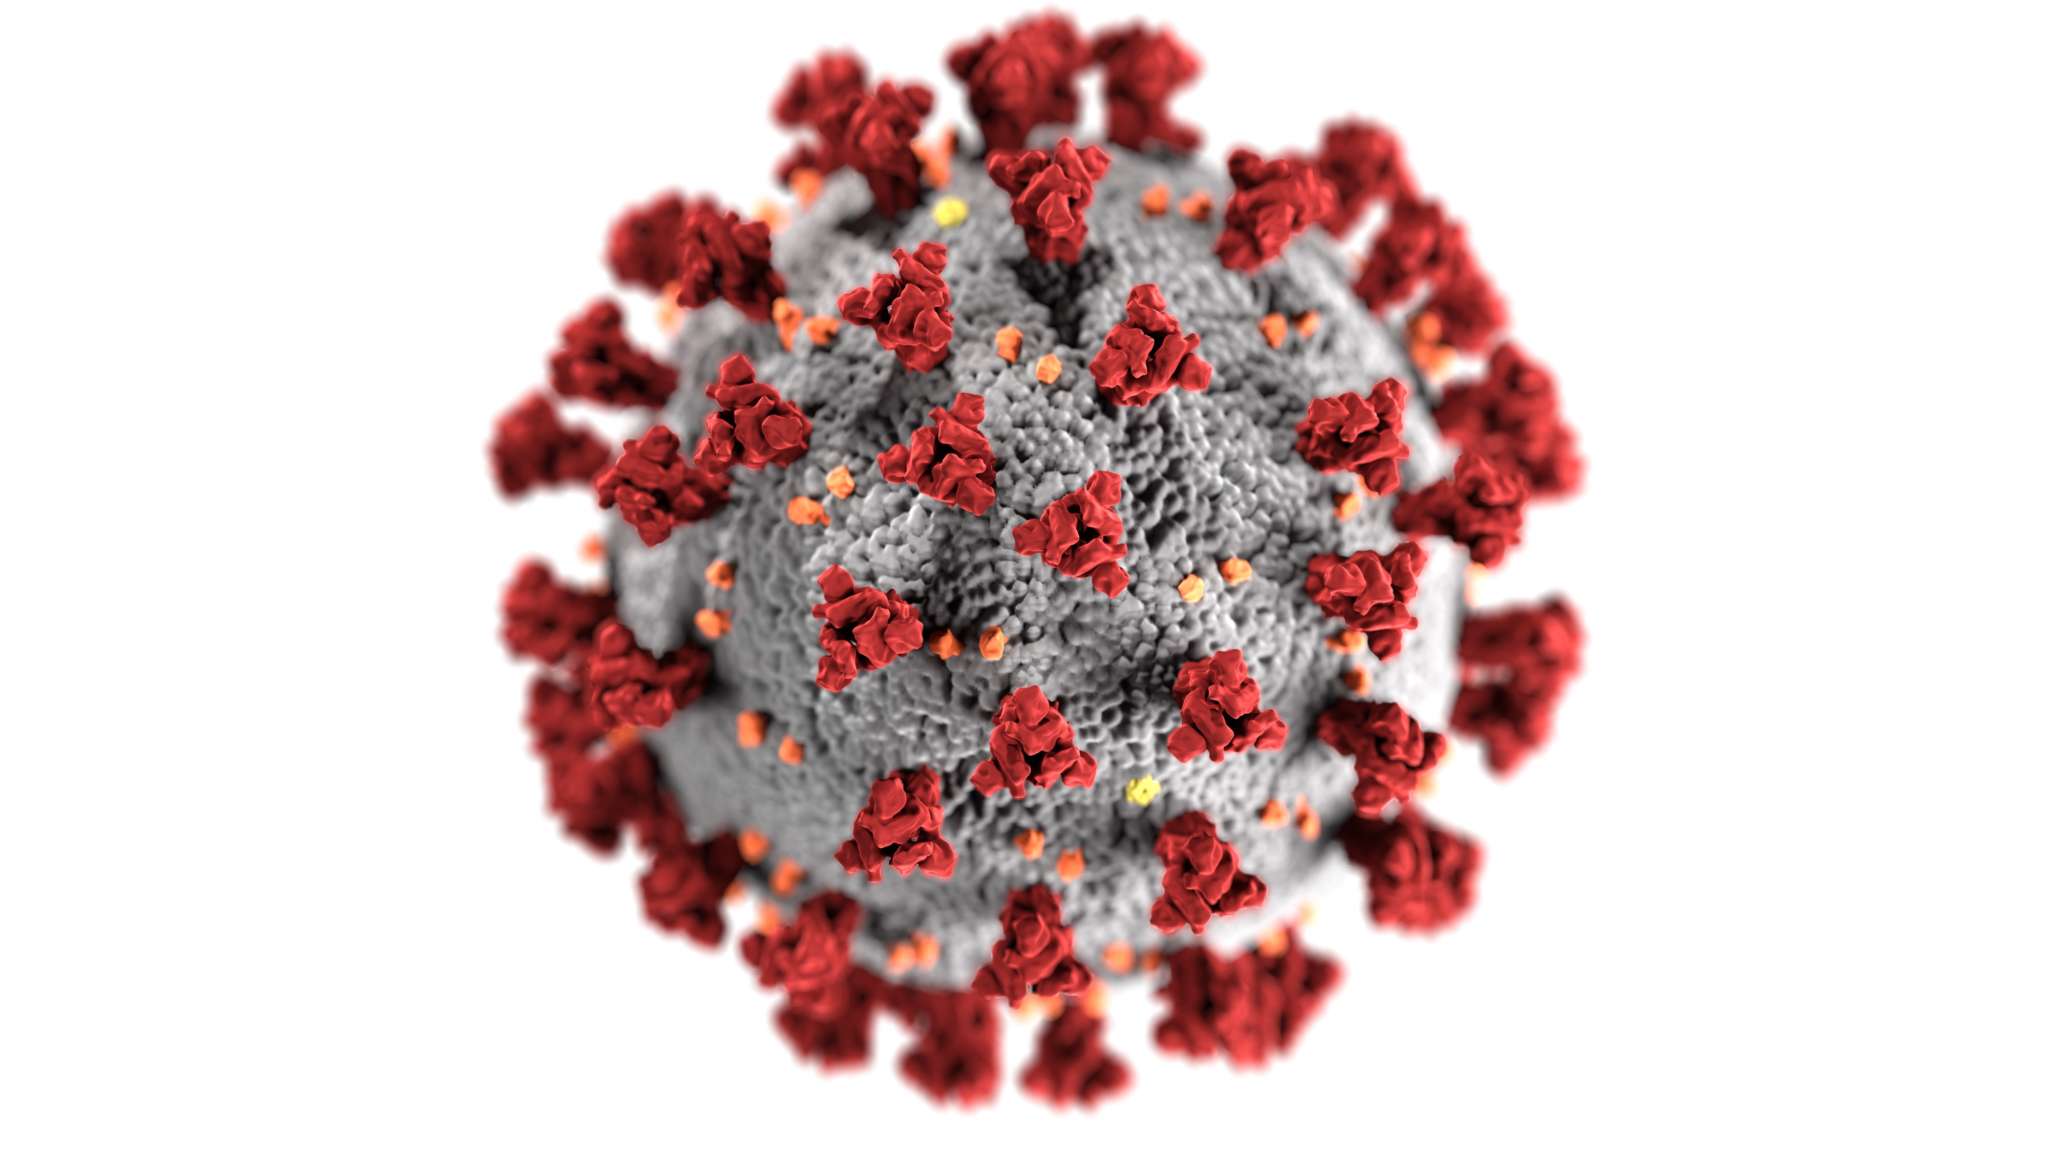 Rechtenvrije afbeelding van Covid 19 virus door CDC op Unsplash.